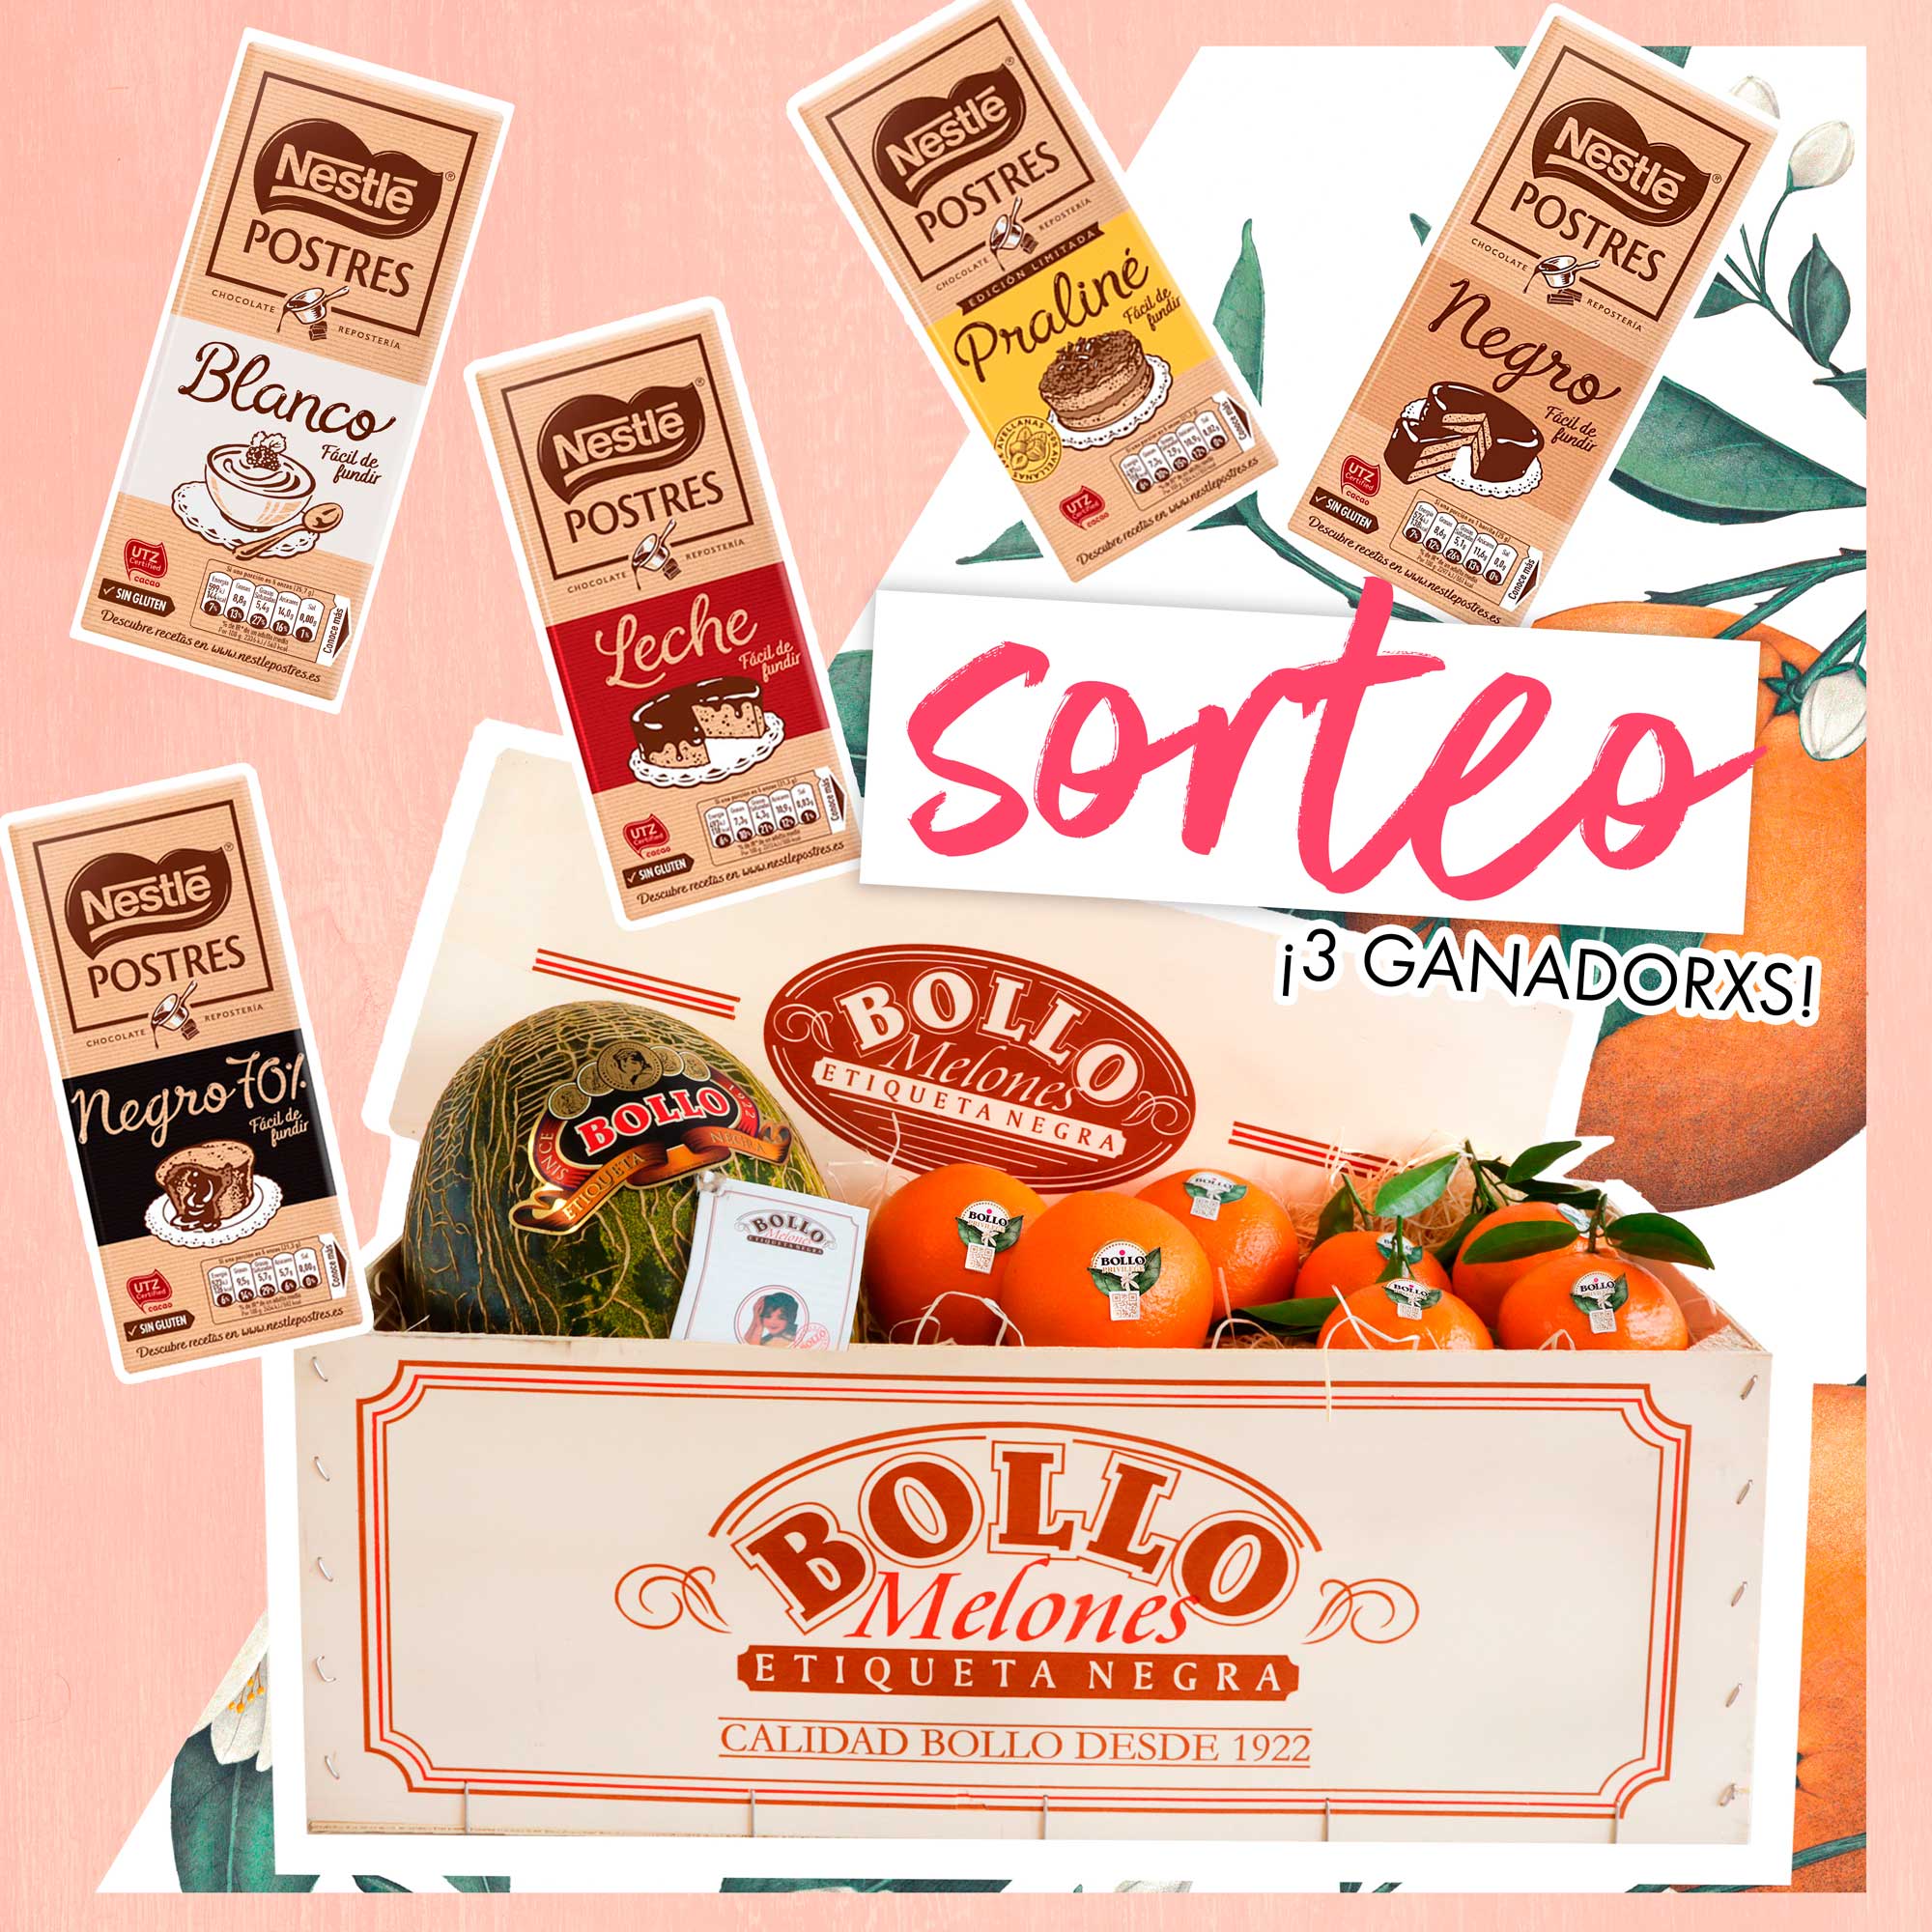 Bases legales Sorteo Bollo Fruits & Nestlé Postres